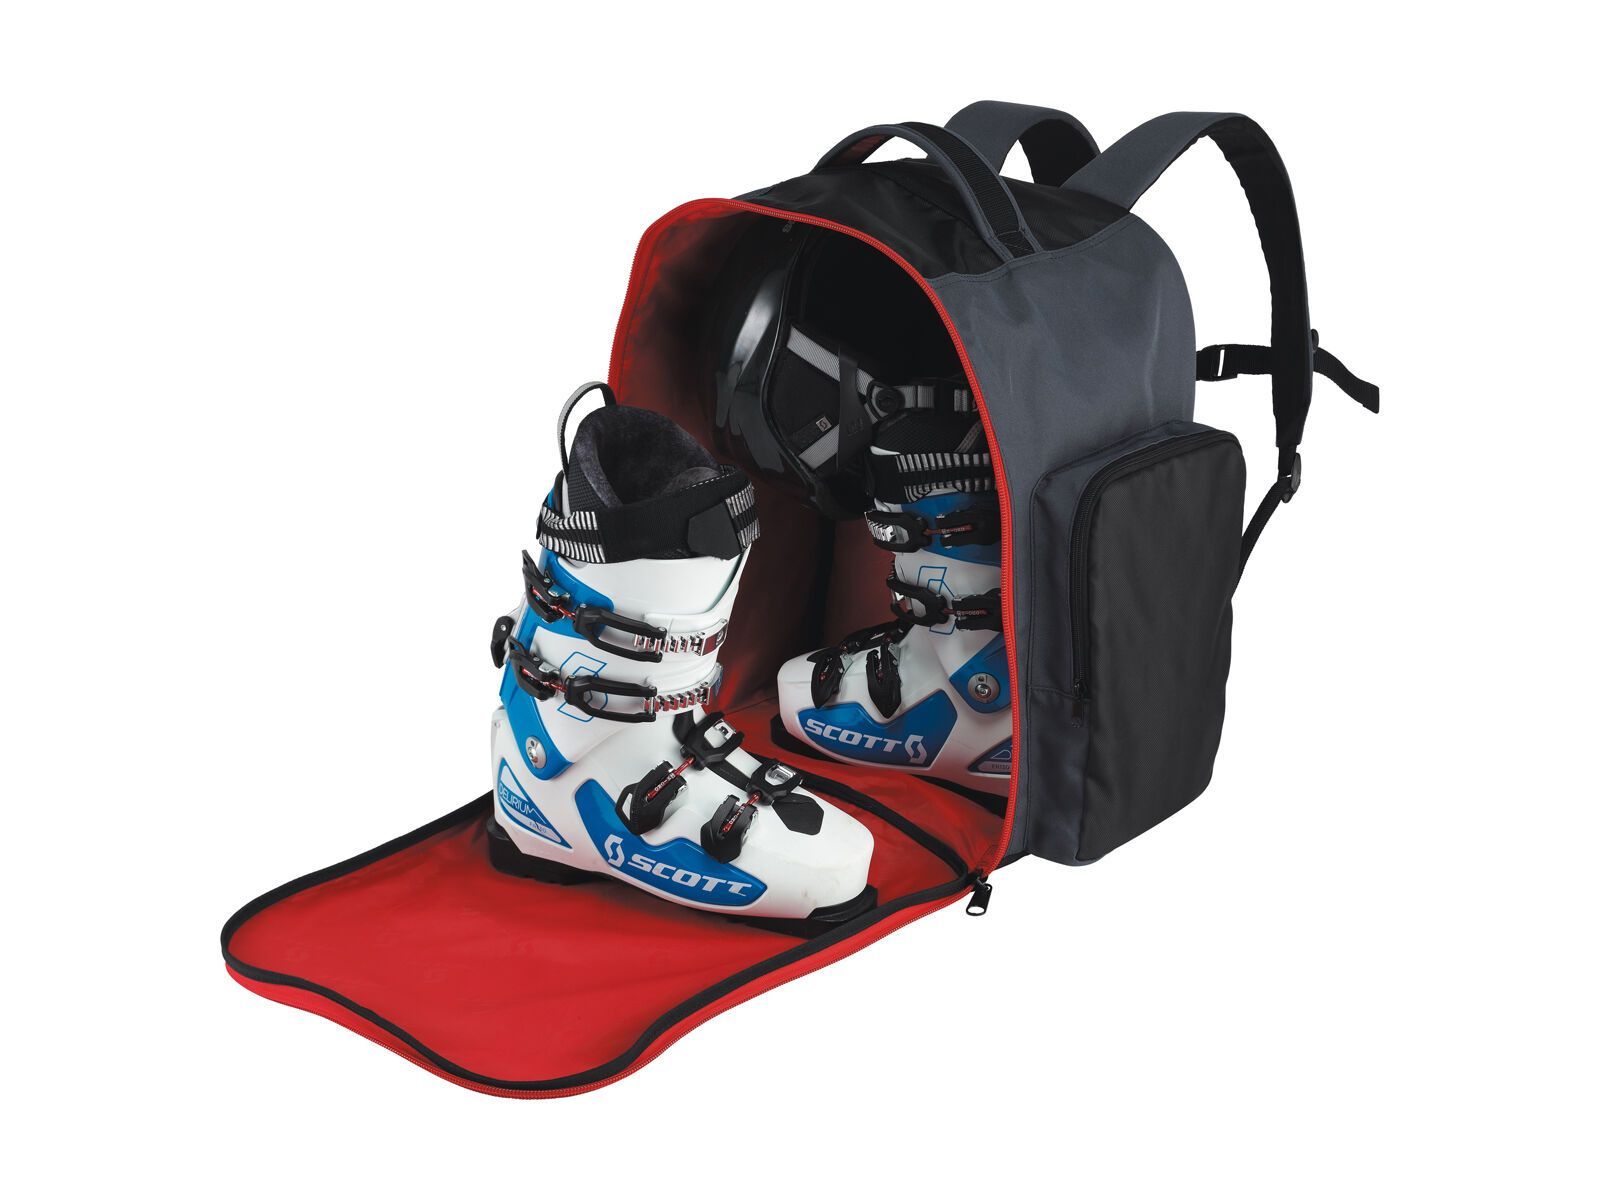 Сапоги сумки купить. Сумка для ботинок Atomic Boot Bag 40l. Чехол Salomon Ski Boots Bag. Рюкзак Атомик для горнолыжных ботинок и шлема. Рюкзак для горнолыжных ботинок Salomon.